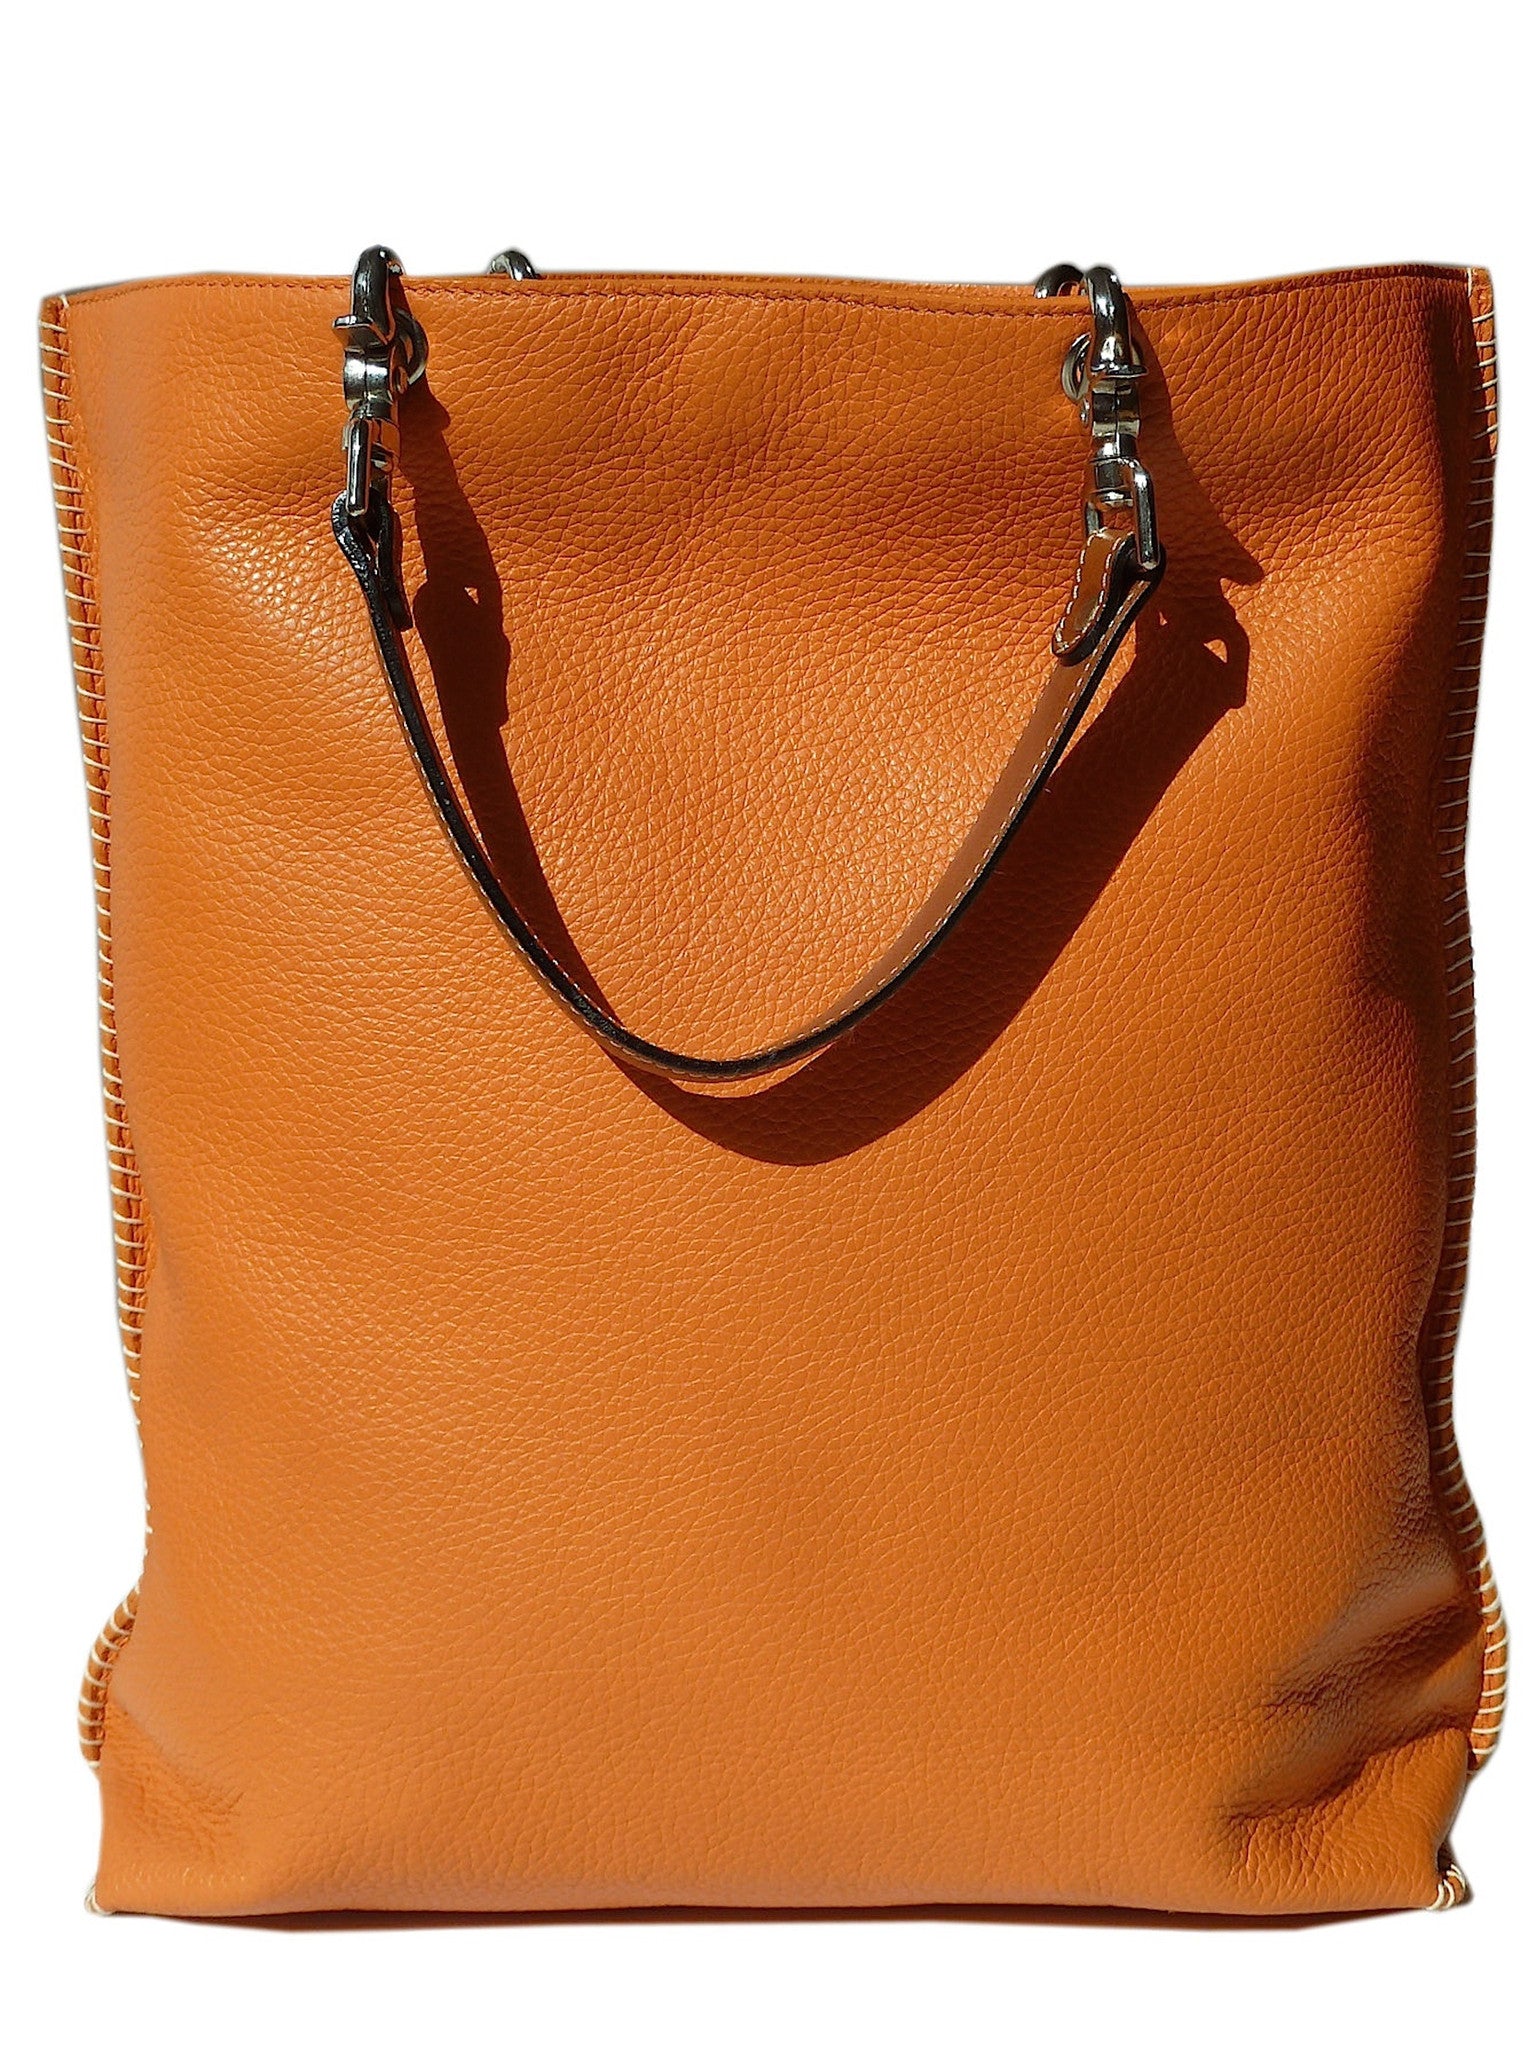 Gajumbo Tote Bag Pebble Grain Leather Orange